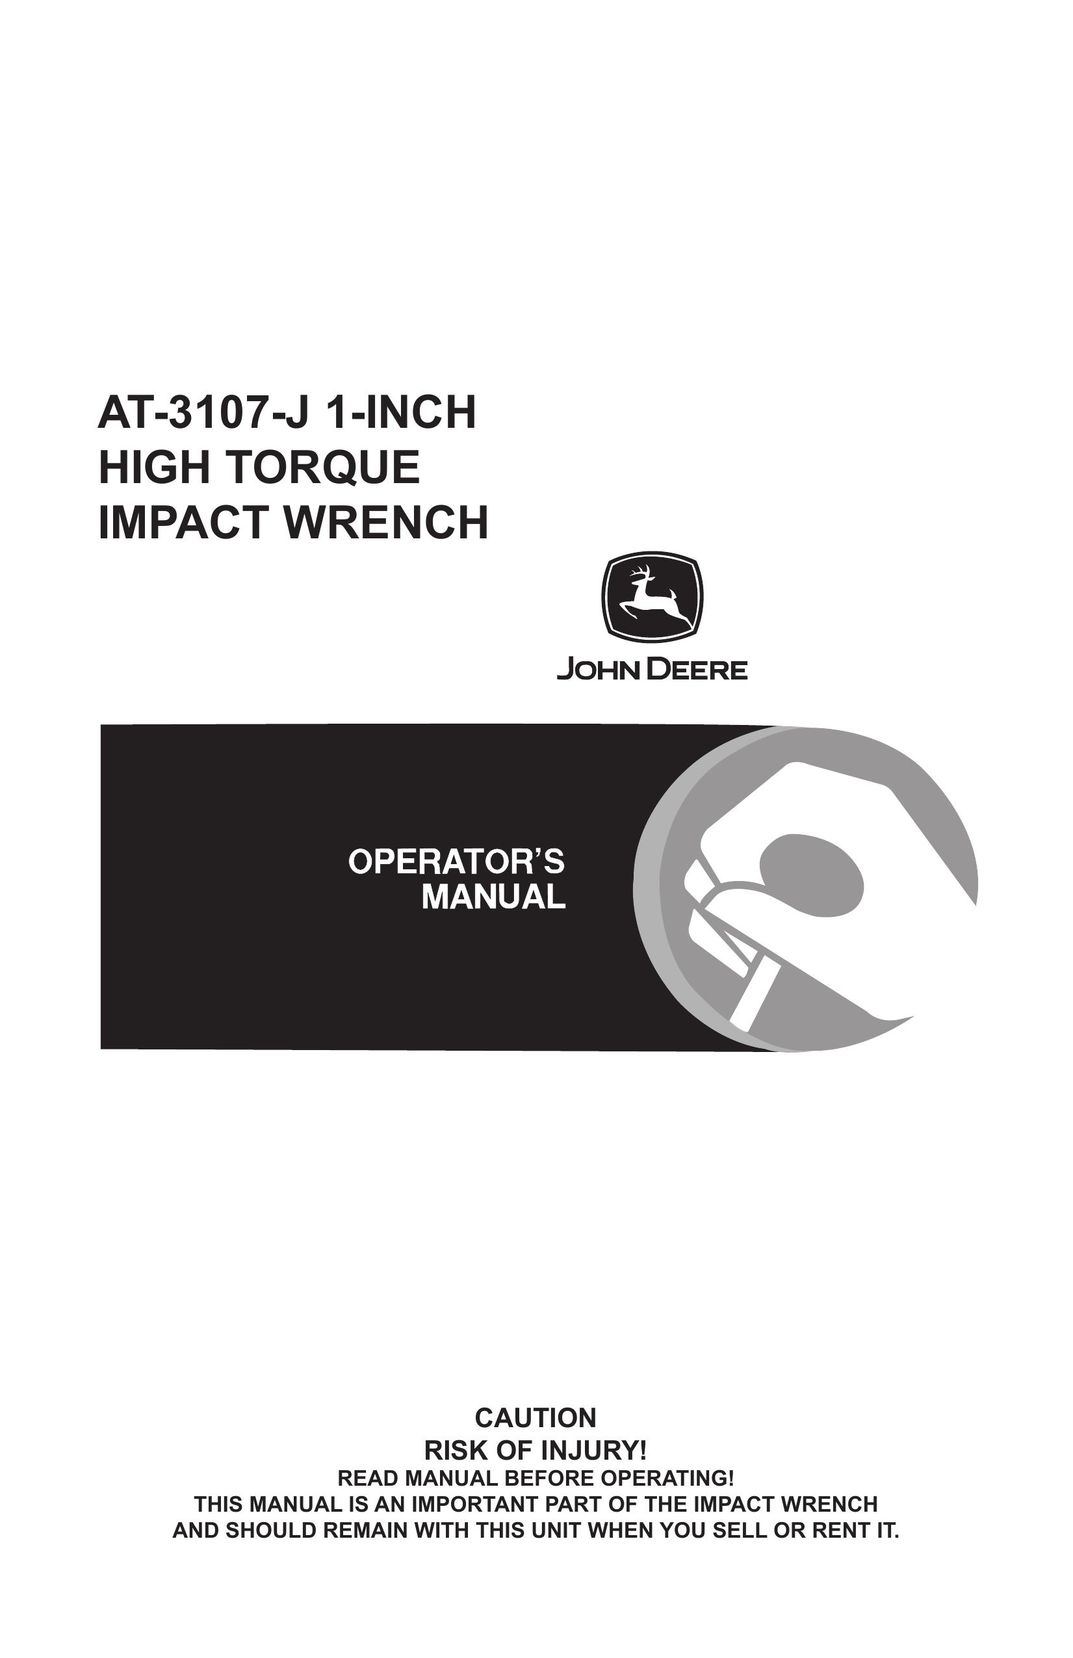 John Deere AT-3107-J Impact Driver User Manual